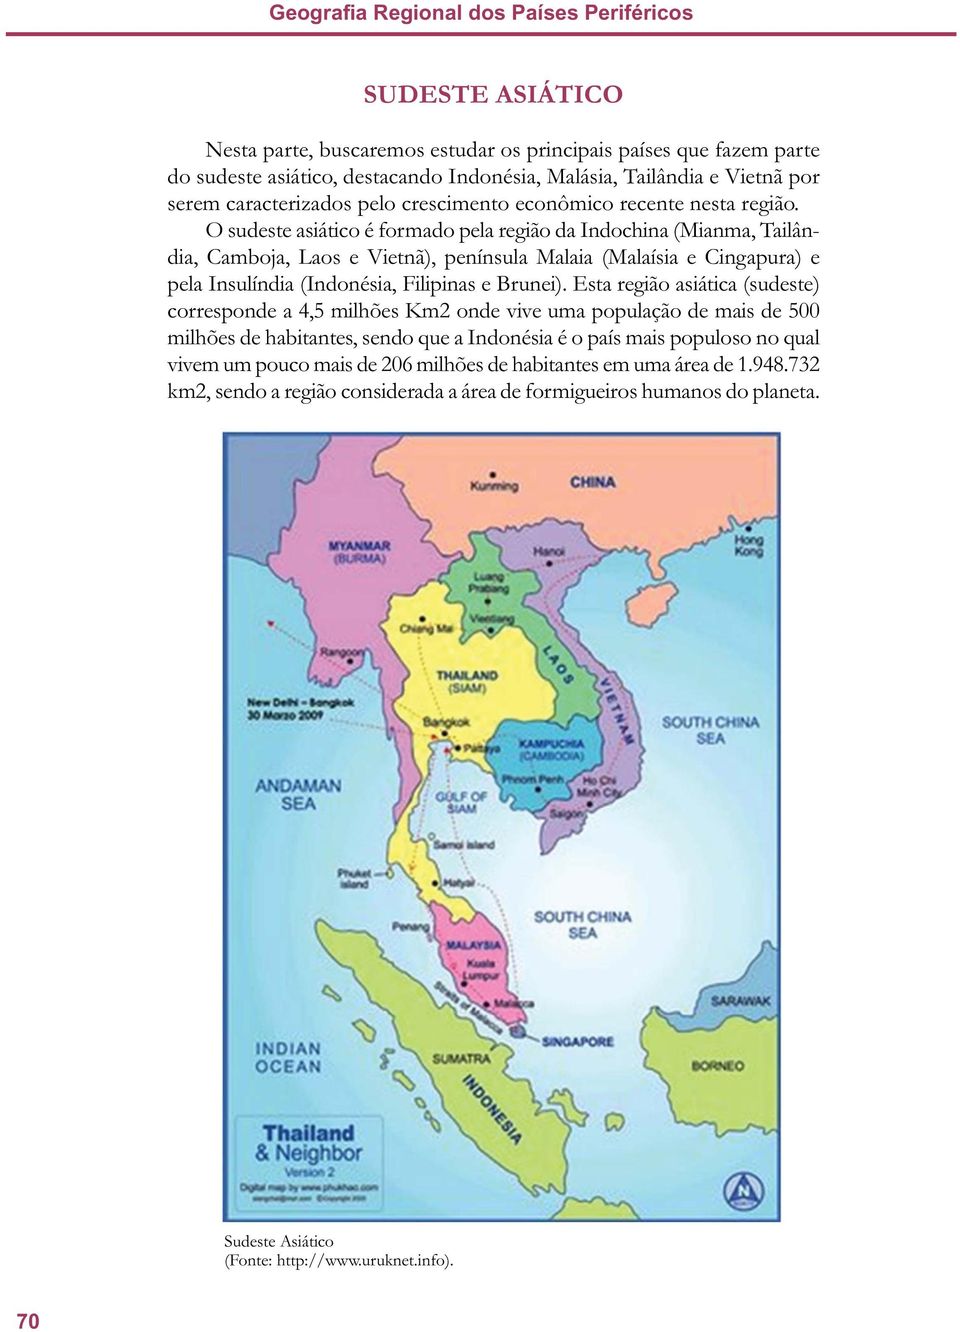 O sudeste asiático é formado pela região da Indochina (Mianma, Tailândia, Camboja, Laos e Vietnã), península Malaia (Malaísia e Cingapura) e pela Insulíndia (Indonésia, Filipinas e Brunei).